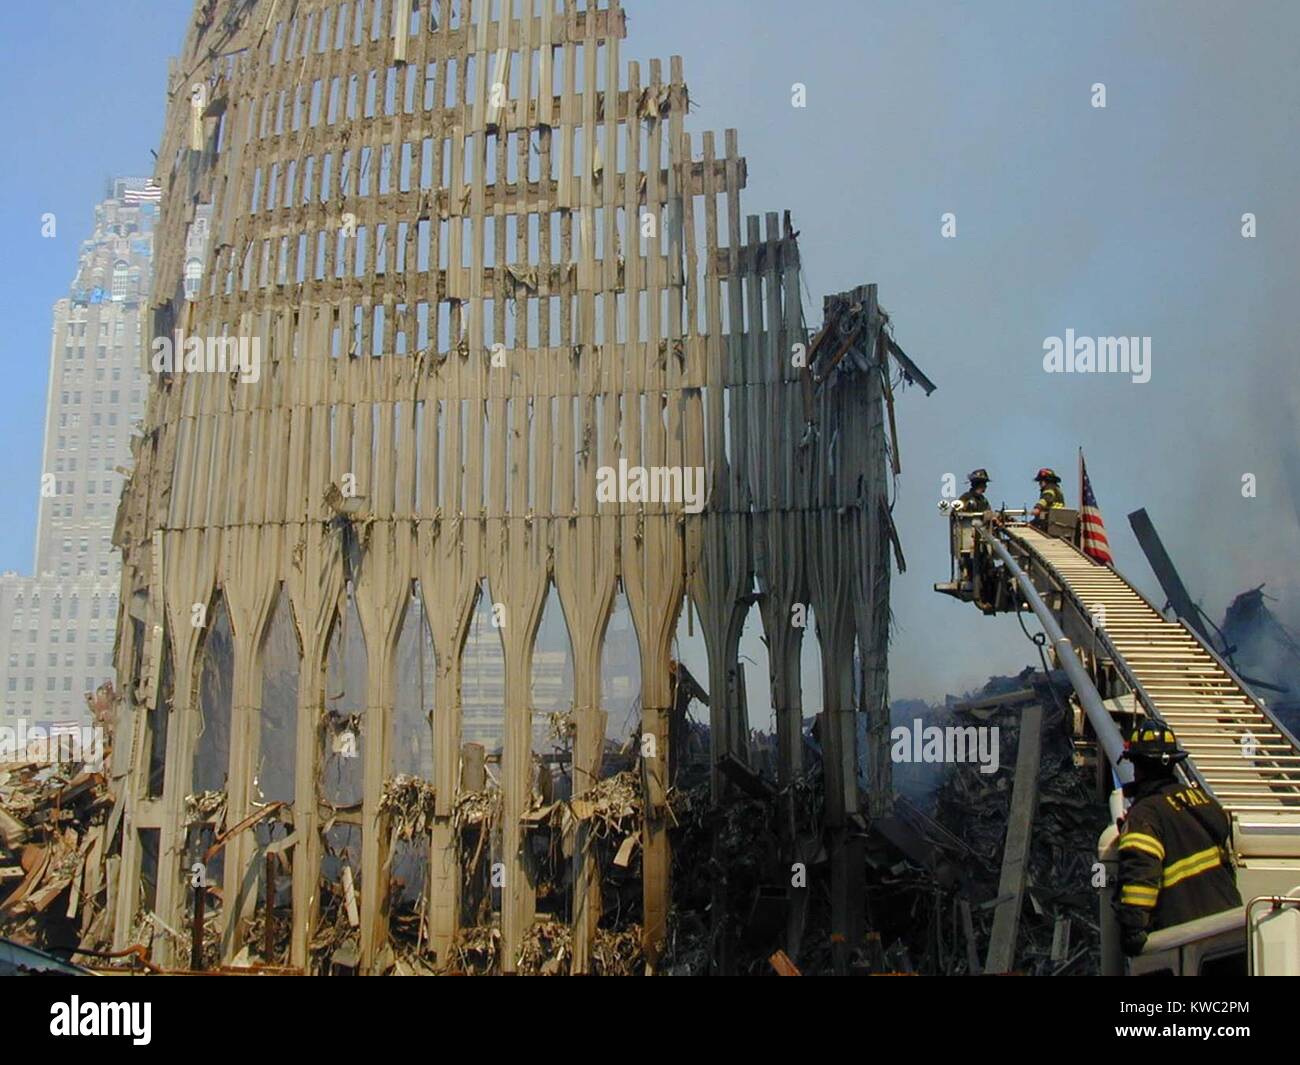 Les pompiers de New York dans un seau sur une échelle à coulisse sur les ruines du WTC 2, la tour sud. Le 16 septembre 2001. Il y a un drapeau sur le toit du New York Téléphone endommagé (Verizon) Bâtiment à gauche lointain. World Trade Center, New York City, après des attaques terroristes du 11 septembre 2001. (BSLOC 2015 2 87) Banque D'Images